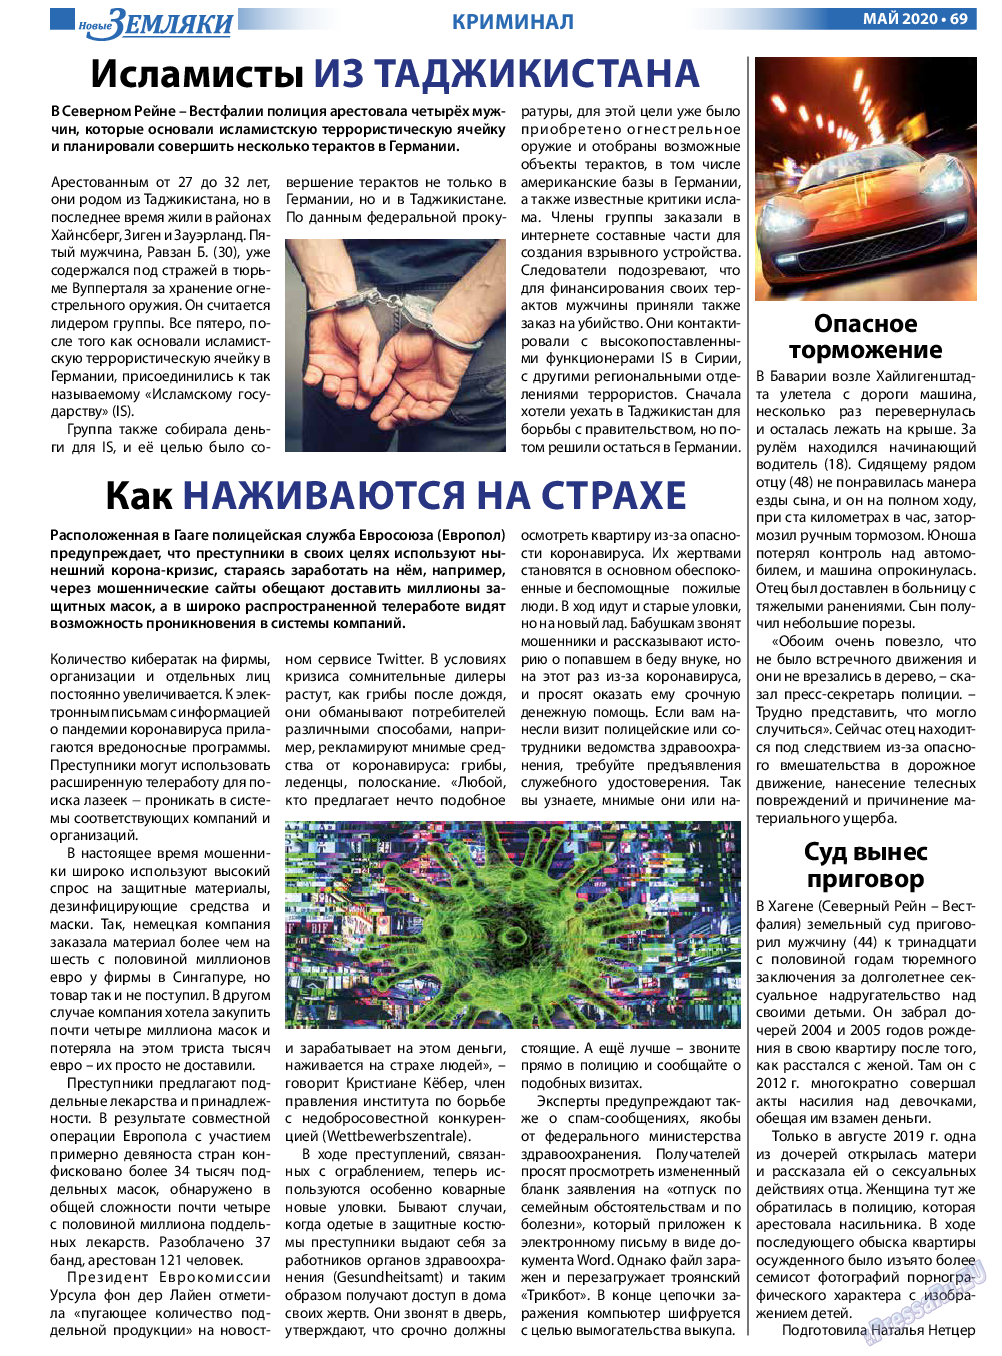 Новые Земляки, газета. 2020 №5 стр.69